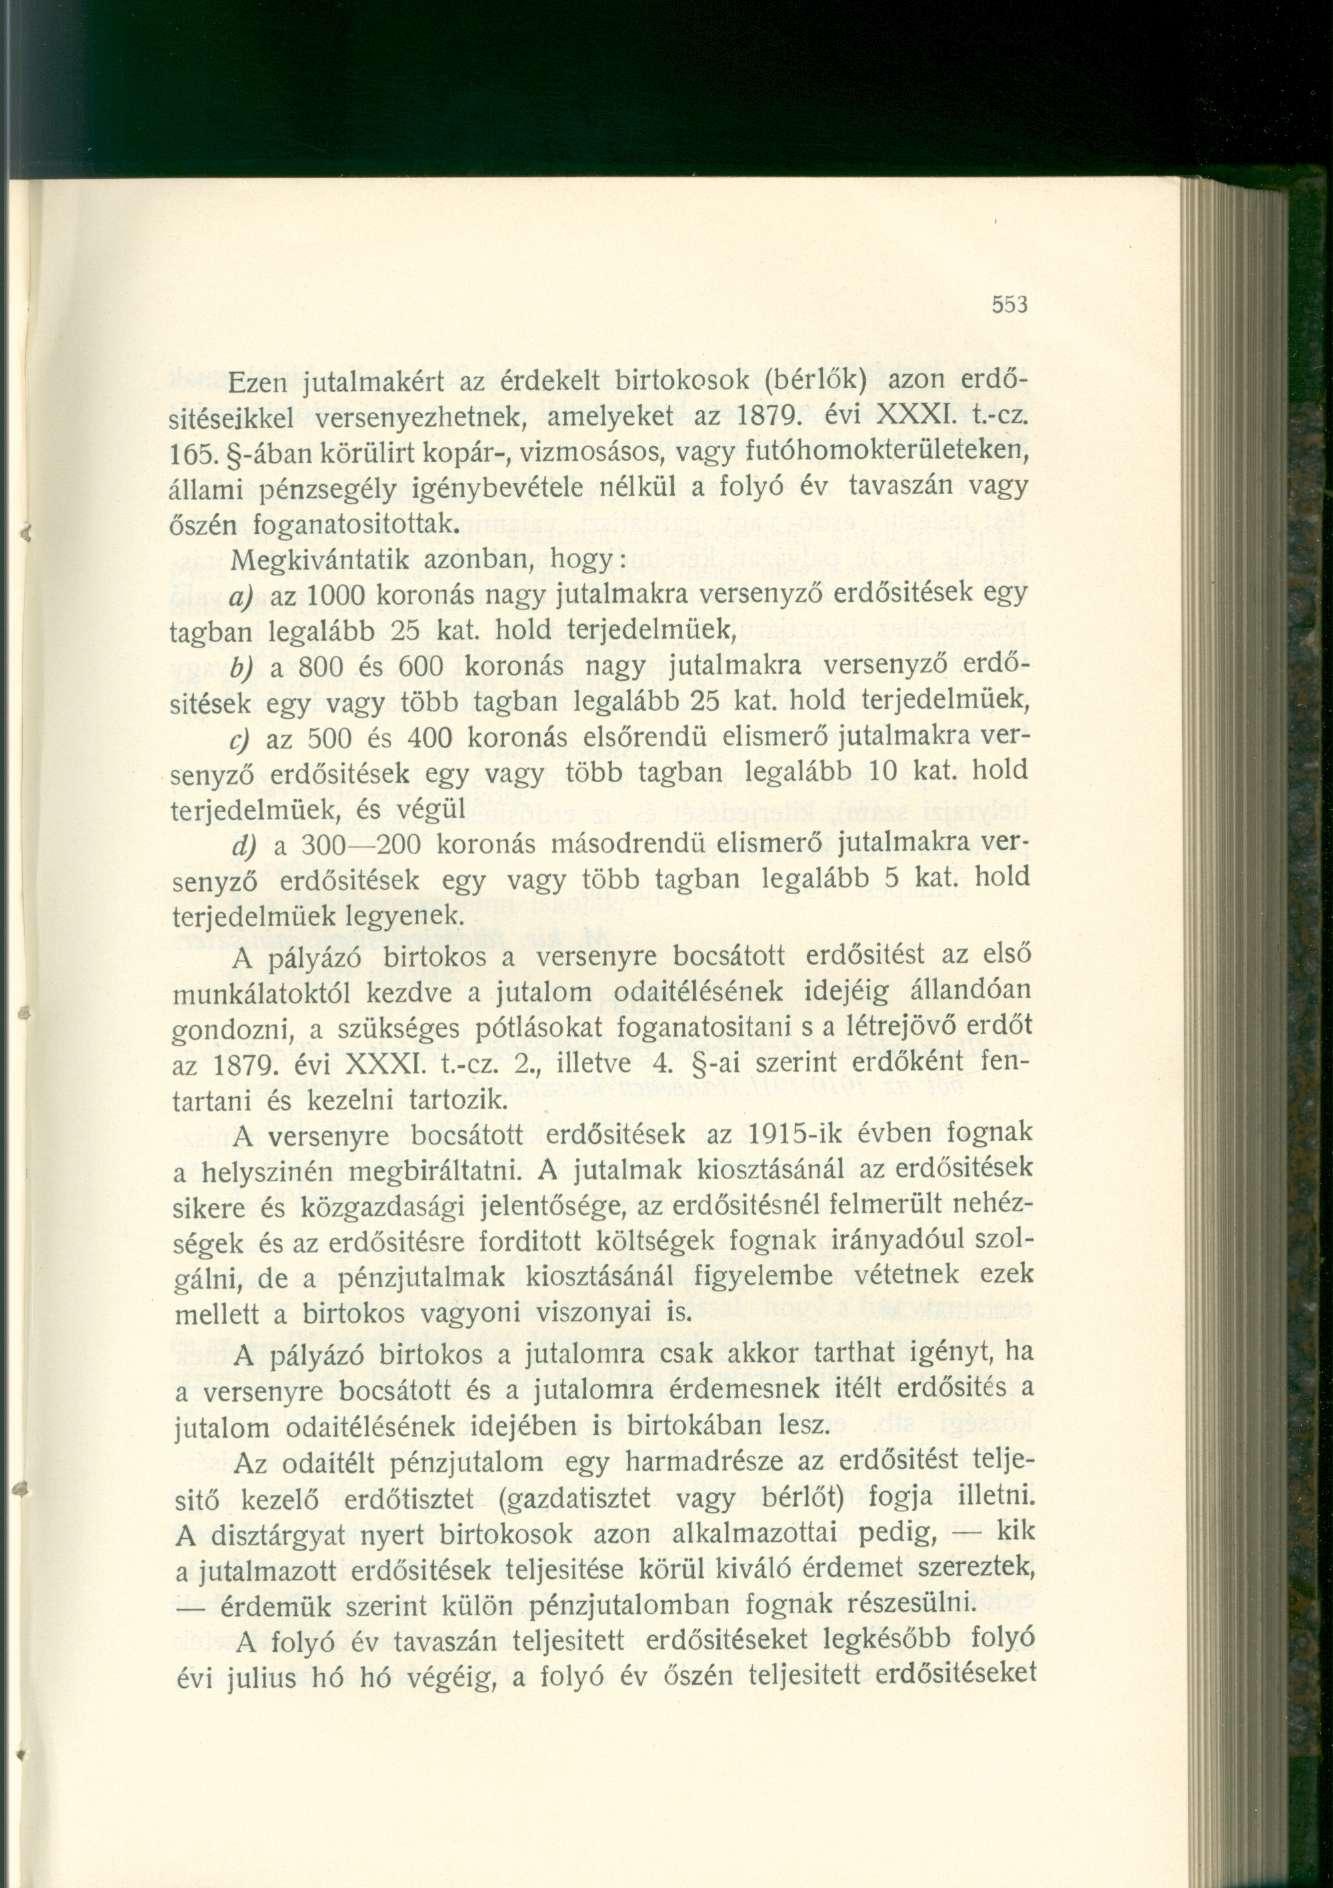 Ezen jutalmakért az érdekelt birtokosok (bérlők) azon erdősítéseikkel versenyezhetnek, amelyeket az 1879. évi XXXI. t.-cz. 165.